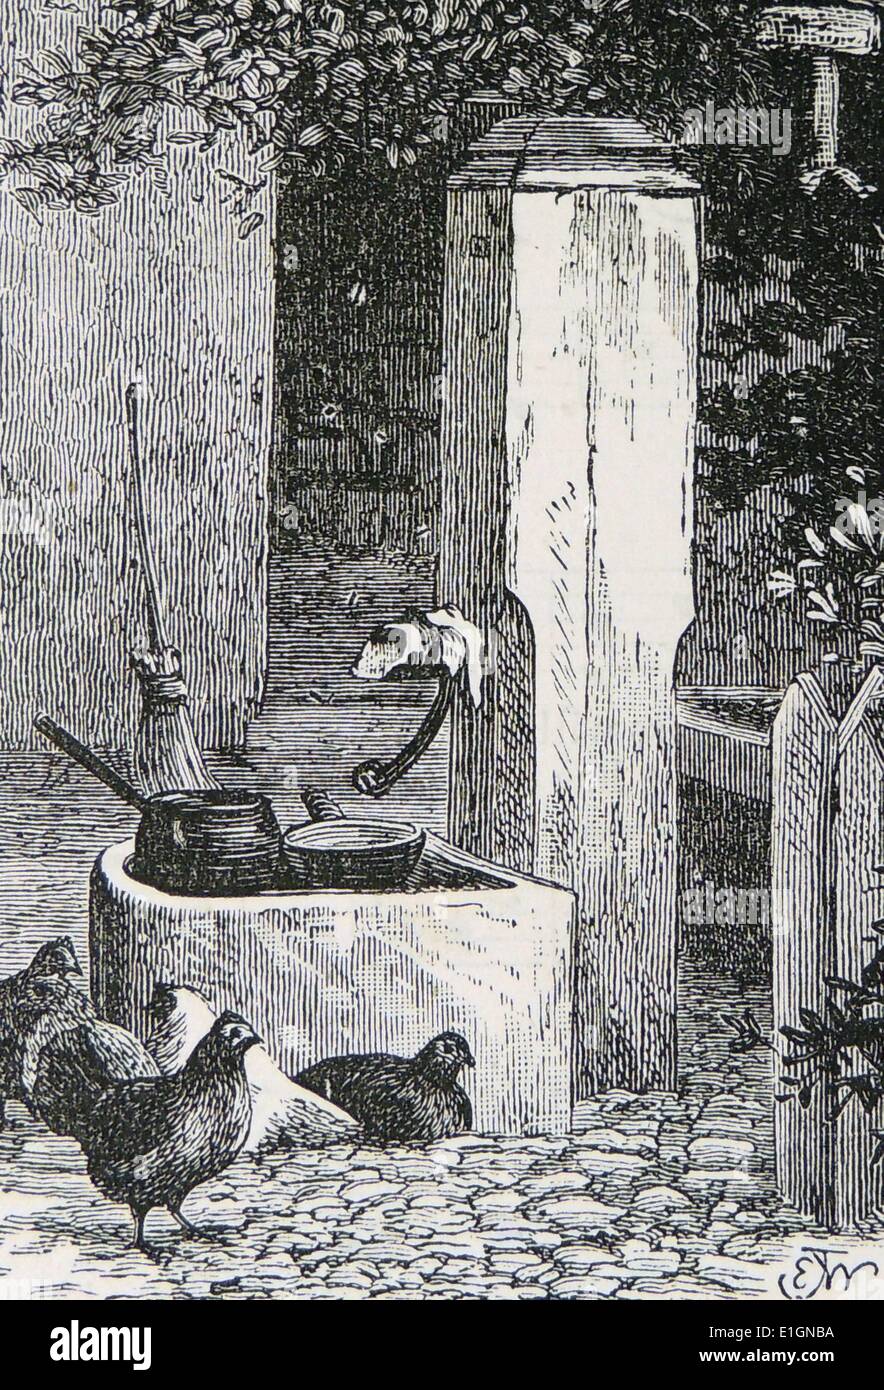 Hühner rund um den Hof. Dies war die einzige Quelle von Wasser, Töpfe und Pfannen, die ergriffen werden, um gewaschen zu werden. Kupferstich, London, 1884. Stockfoto